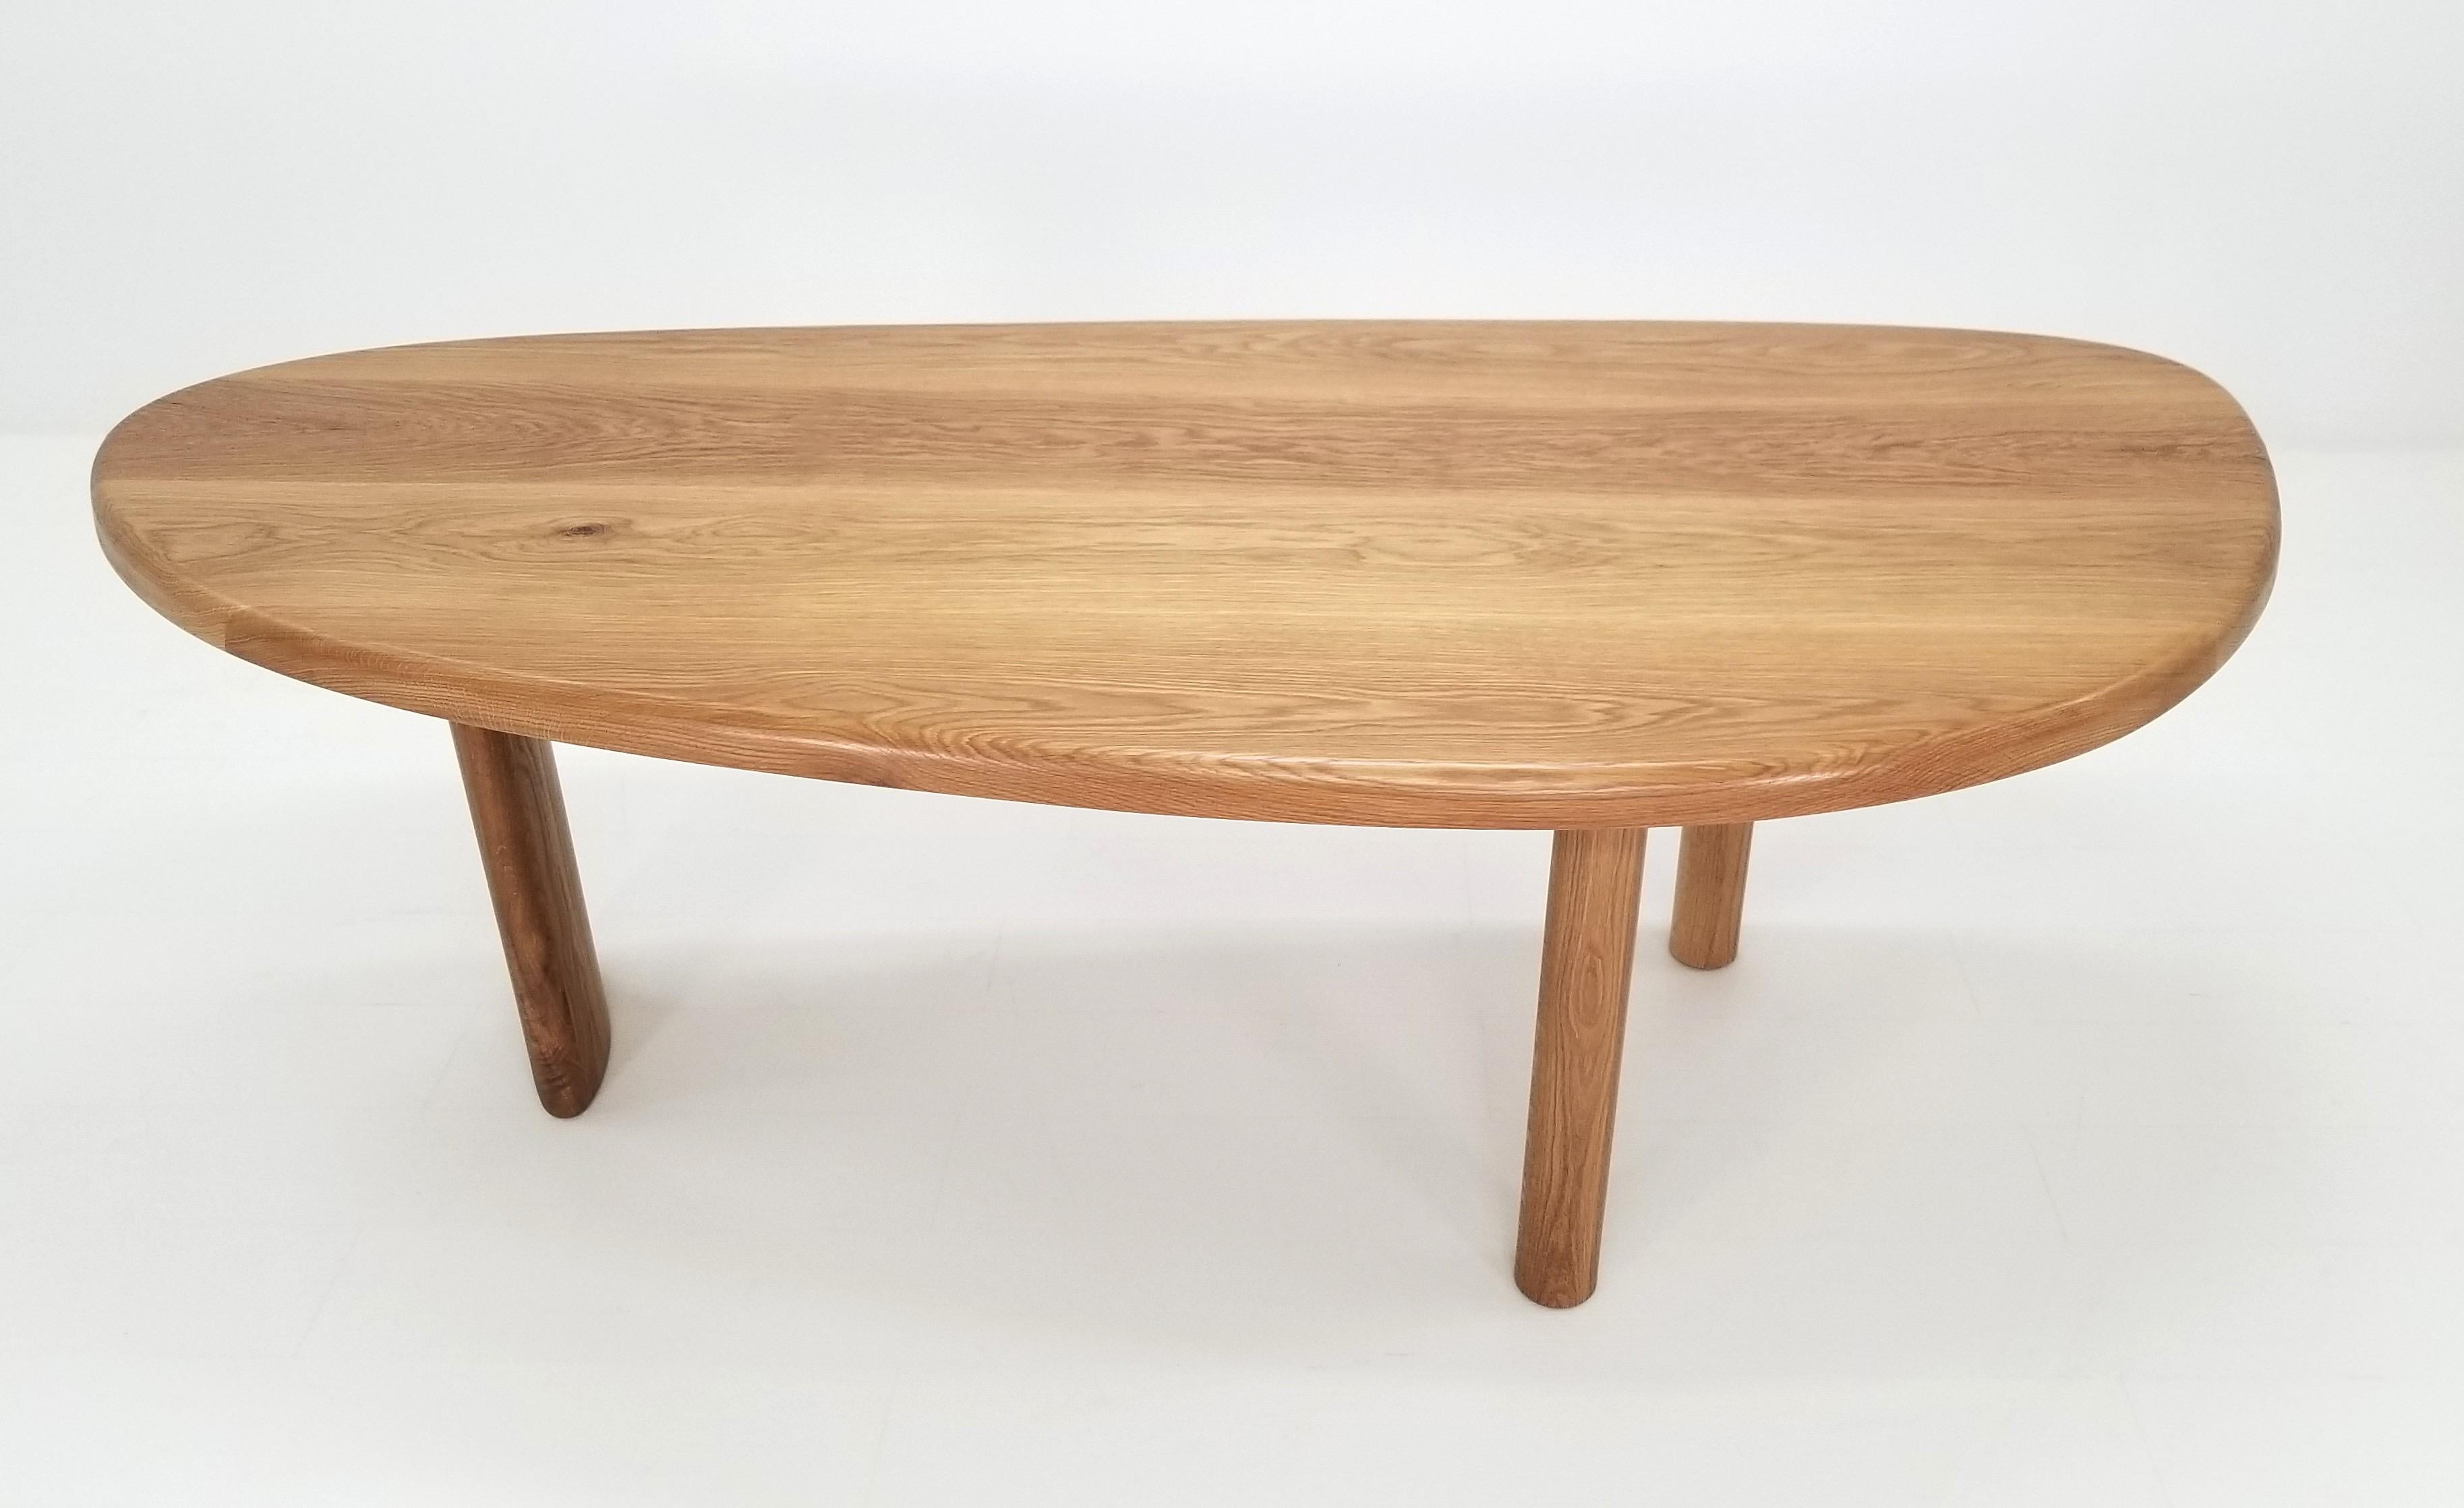 Cette table de forme libre inspirée de la Free Form Dining Table de Charlotte Perriand est fabriquée avec du bois dur américain FAS de première qualité. La finition à l'huile de cire dure ajoute une belle tonalité dorée au chêne blanc. Ce modèle se